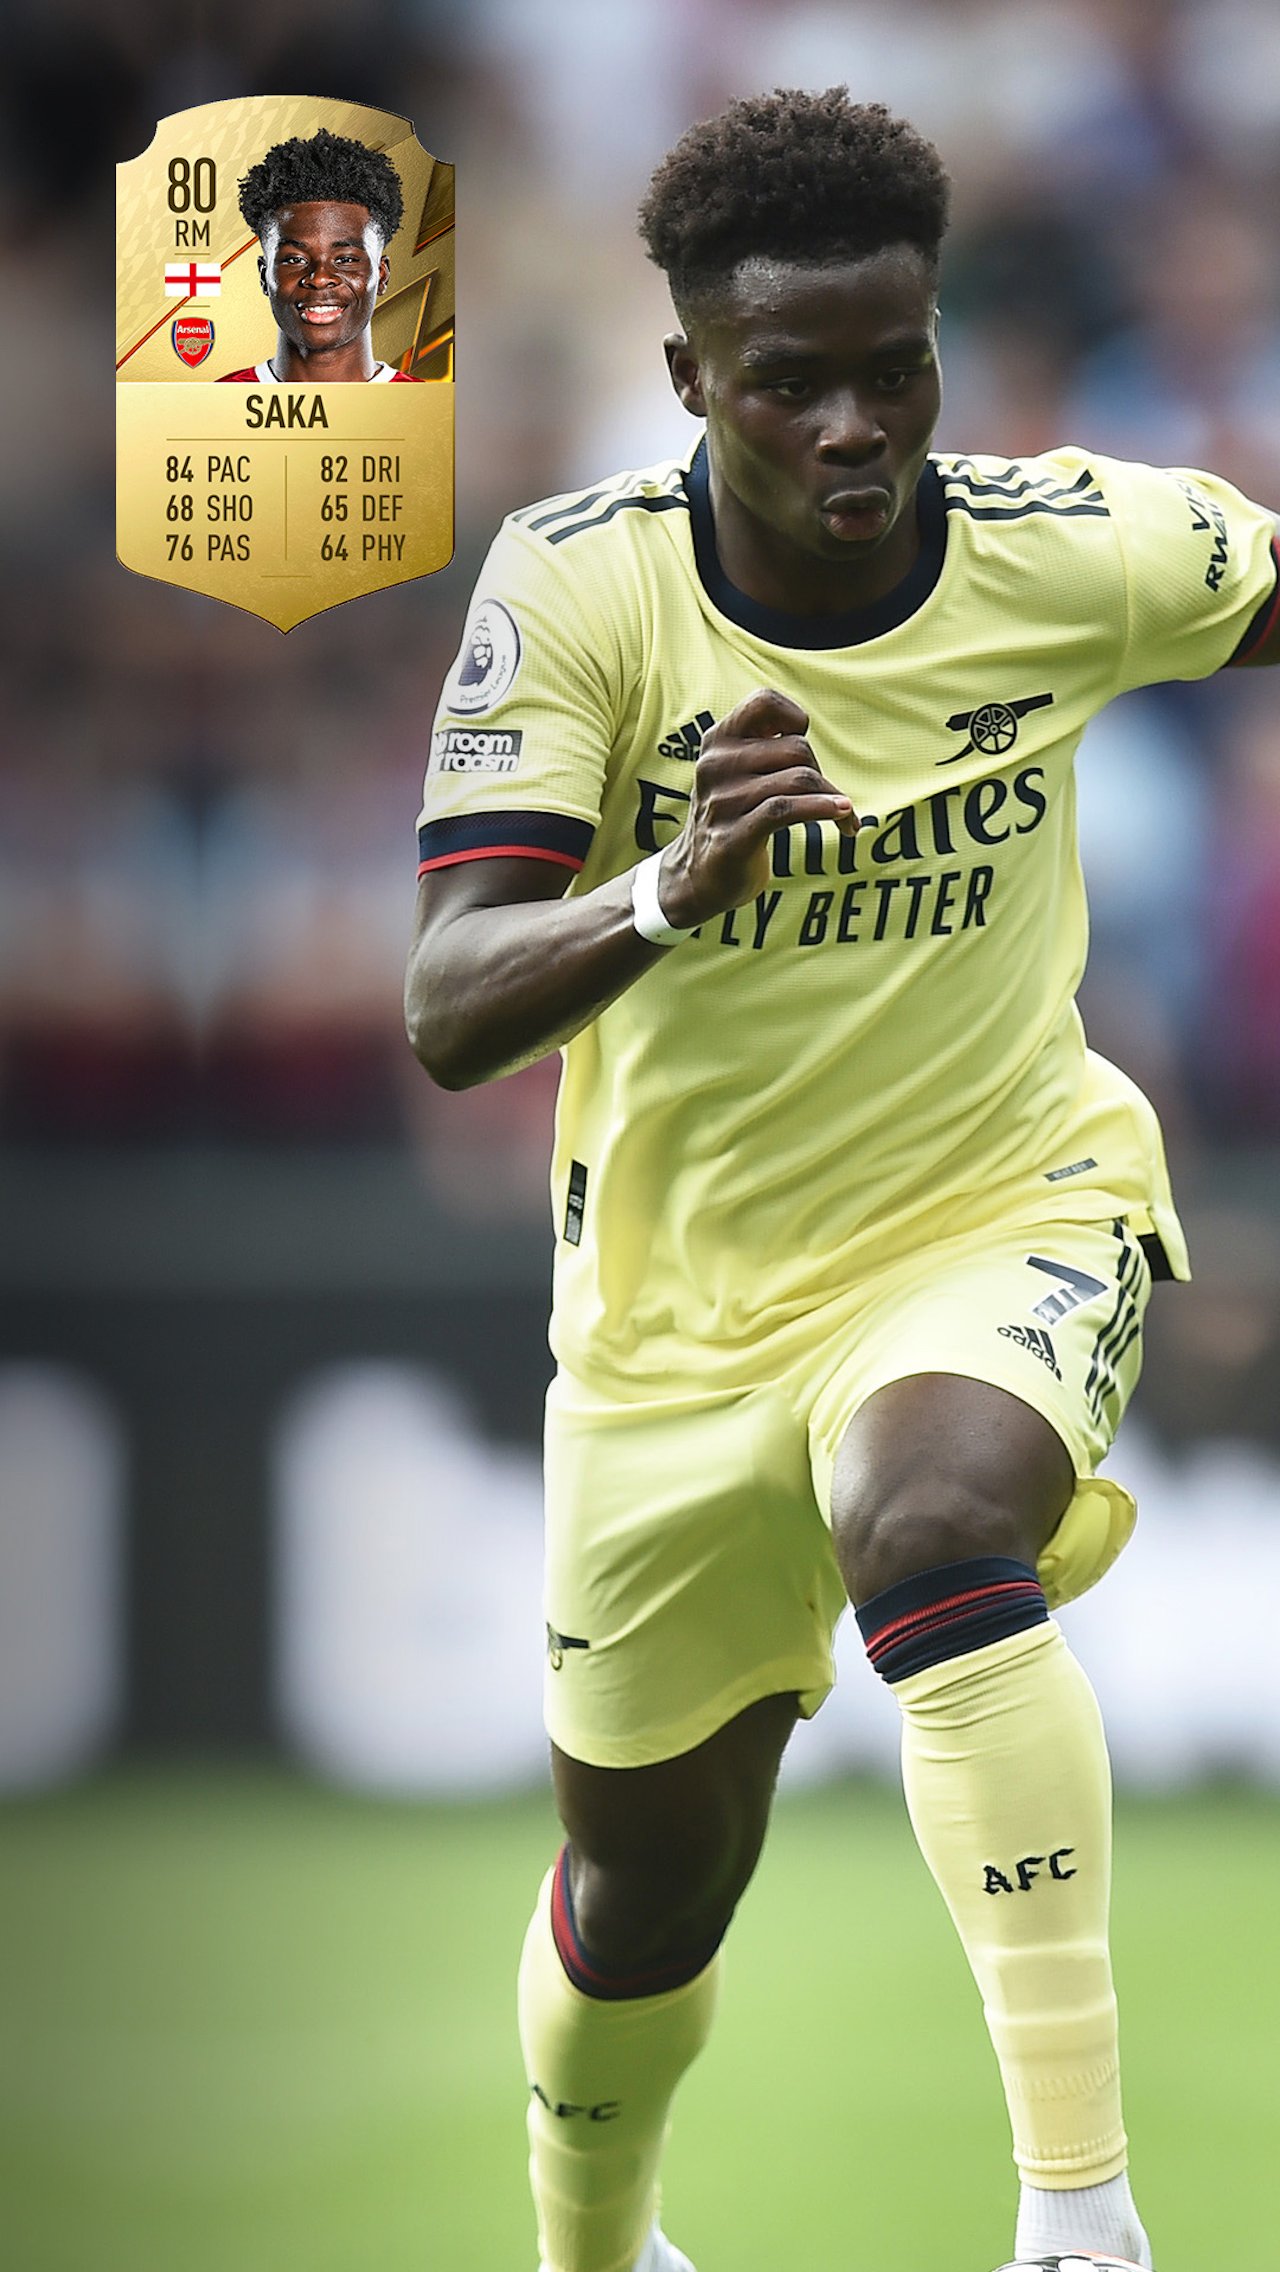 ПП: Букайо Сака, 18 лет, «Арсенал» — Рейтинг 80